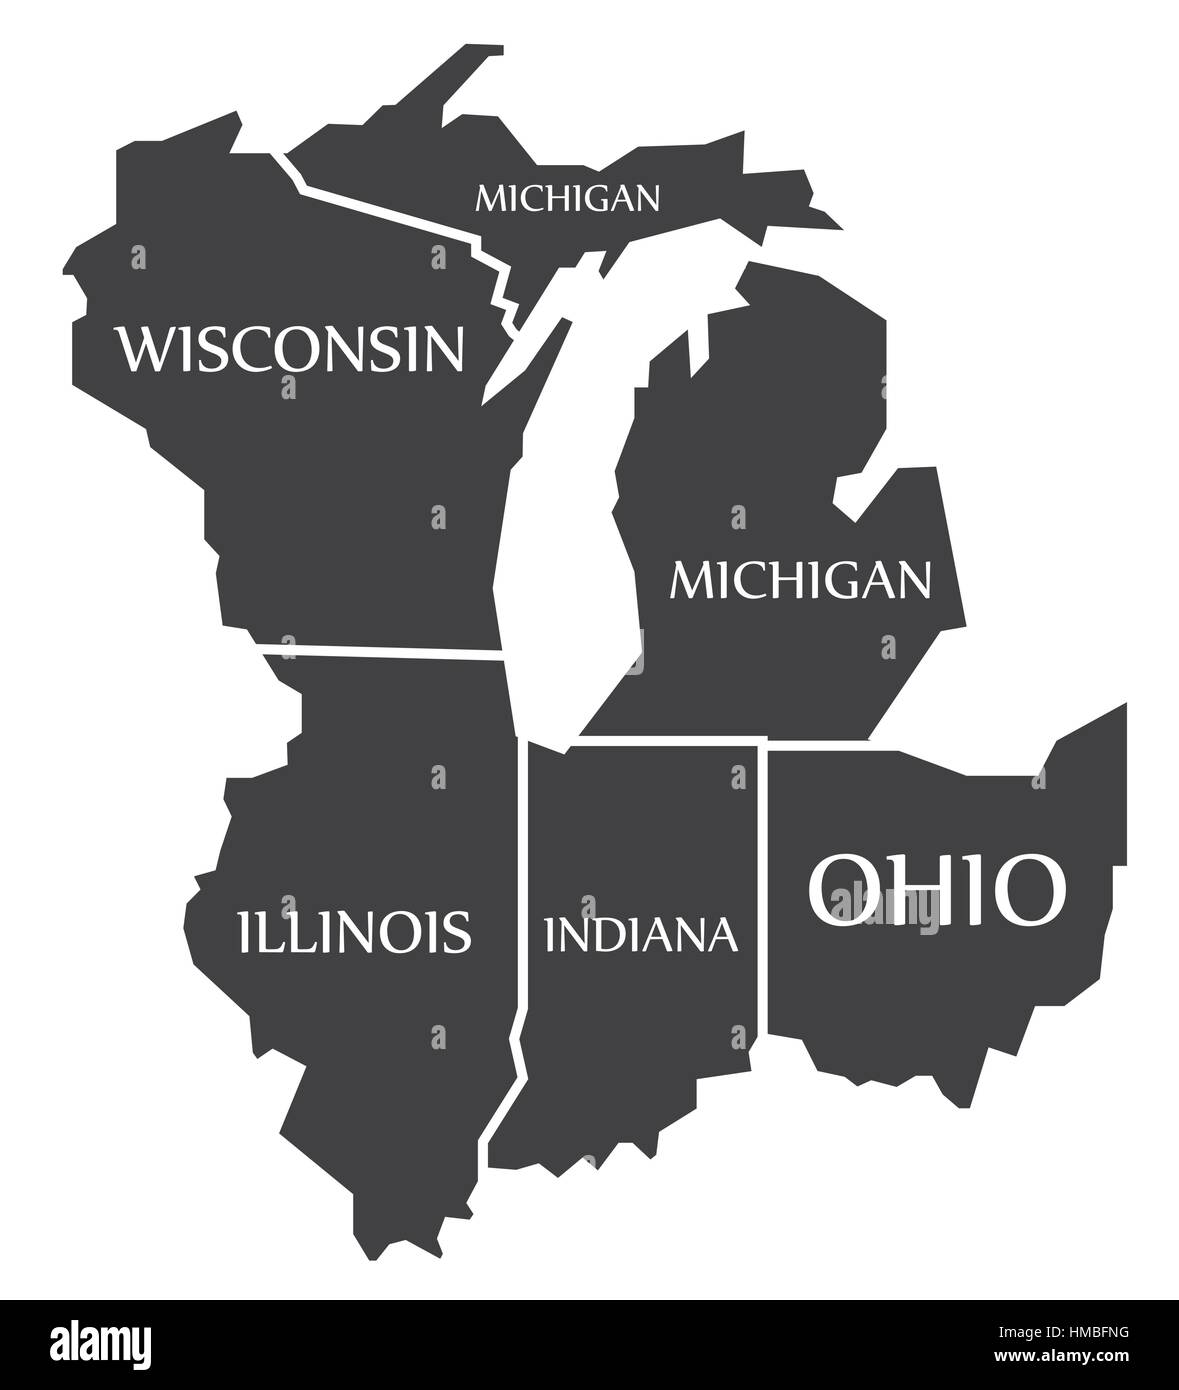 Michigan - Wisconsin - Illinois - Indiana - Ohio Karte gekennzeichnet schwarz Abbildung Stock Vektor